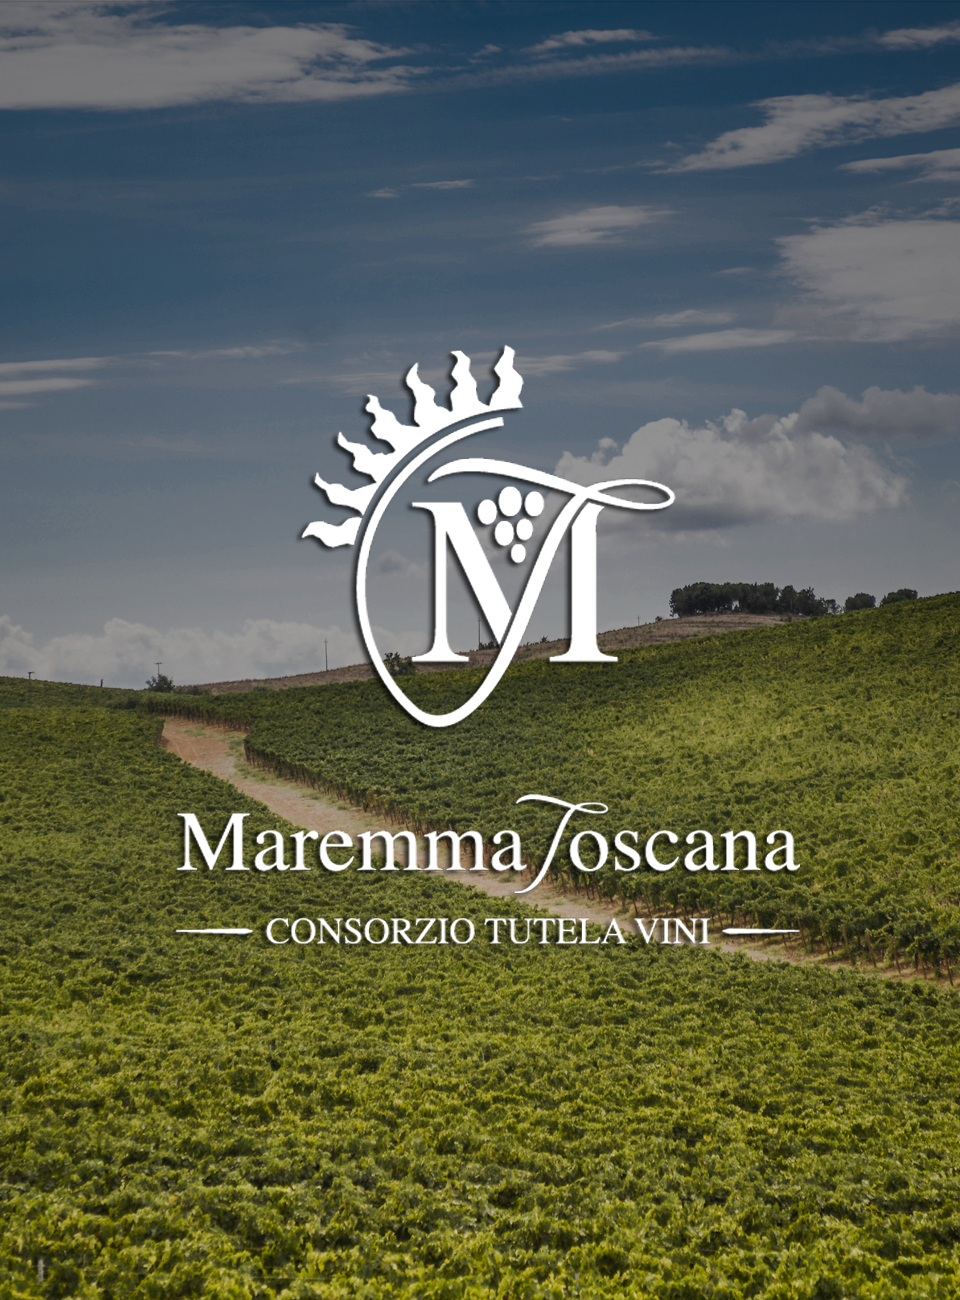 Consorzio Tutela vini della Maremma Toscana